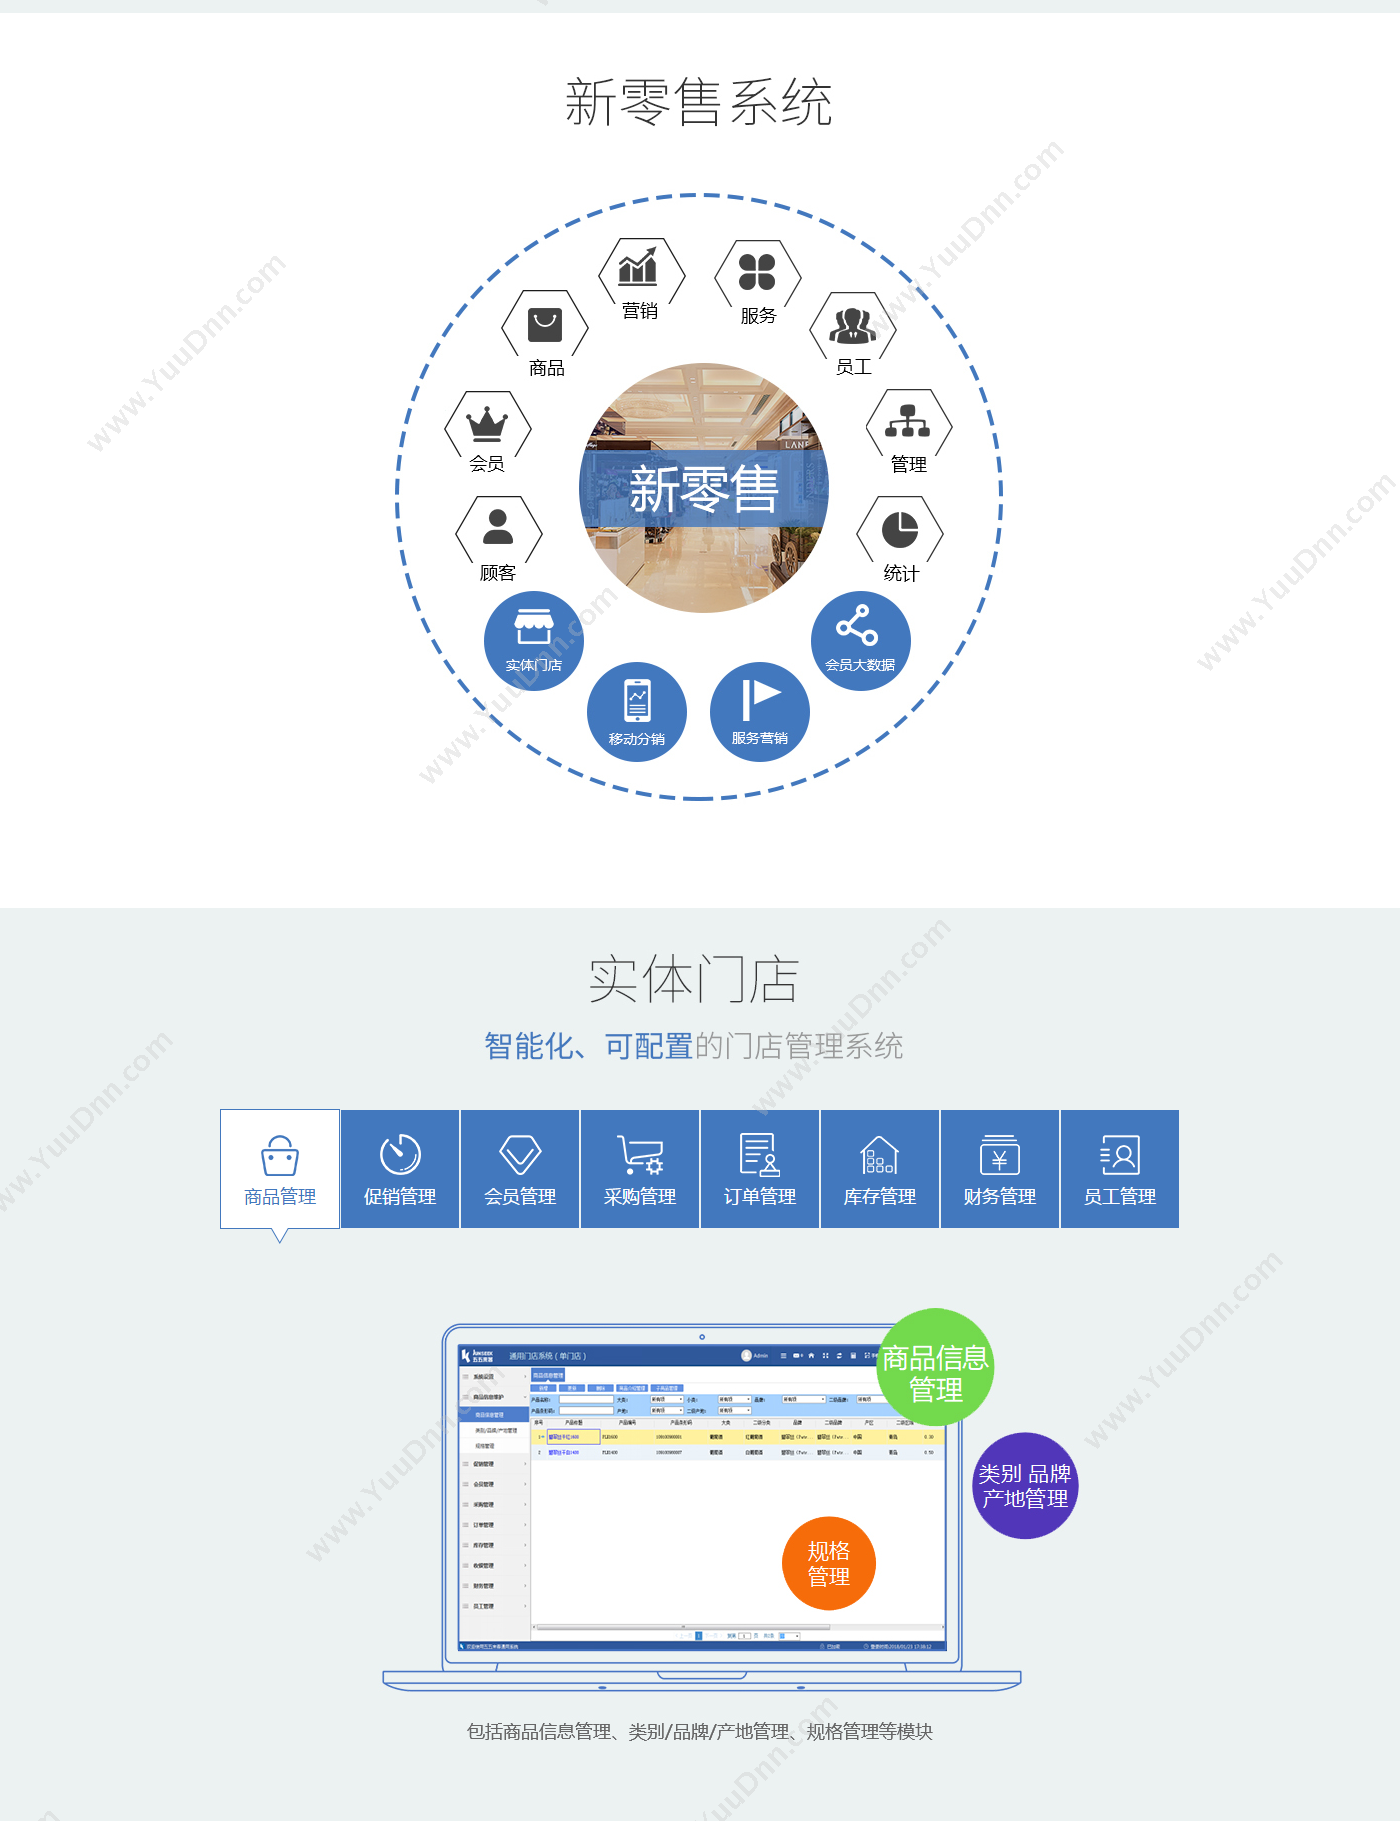 上海五五来客科技股份有限公司 新零售系统 客商管理平台